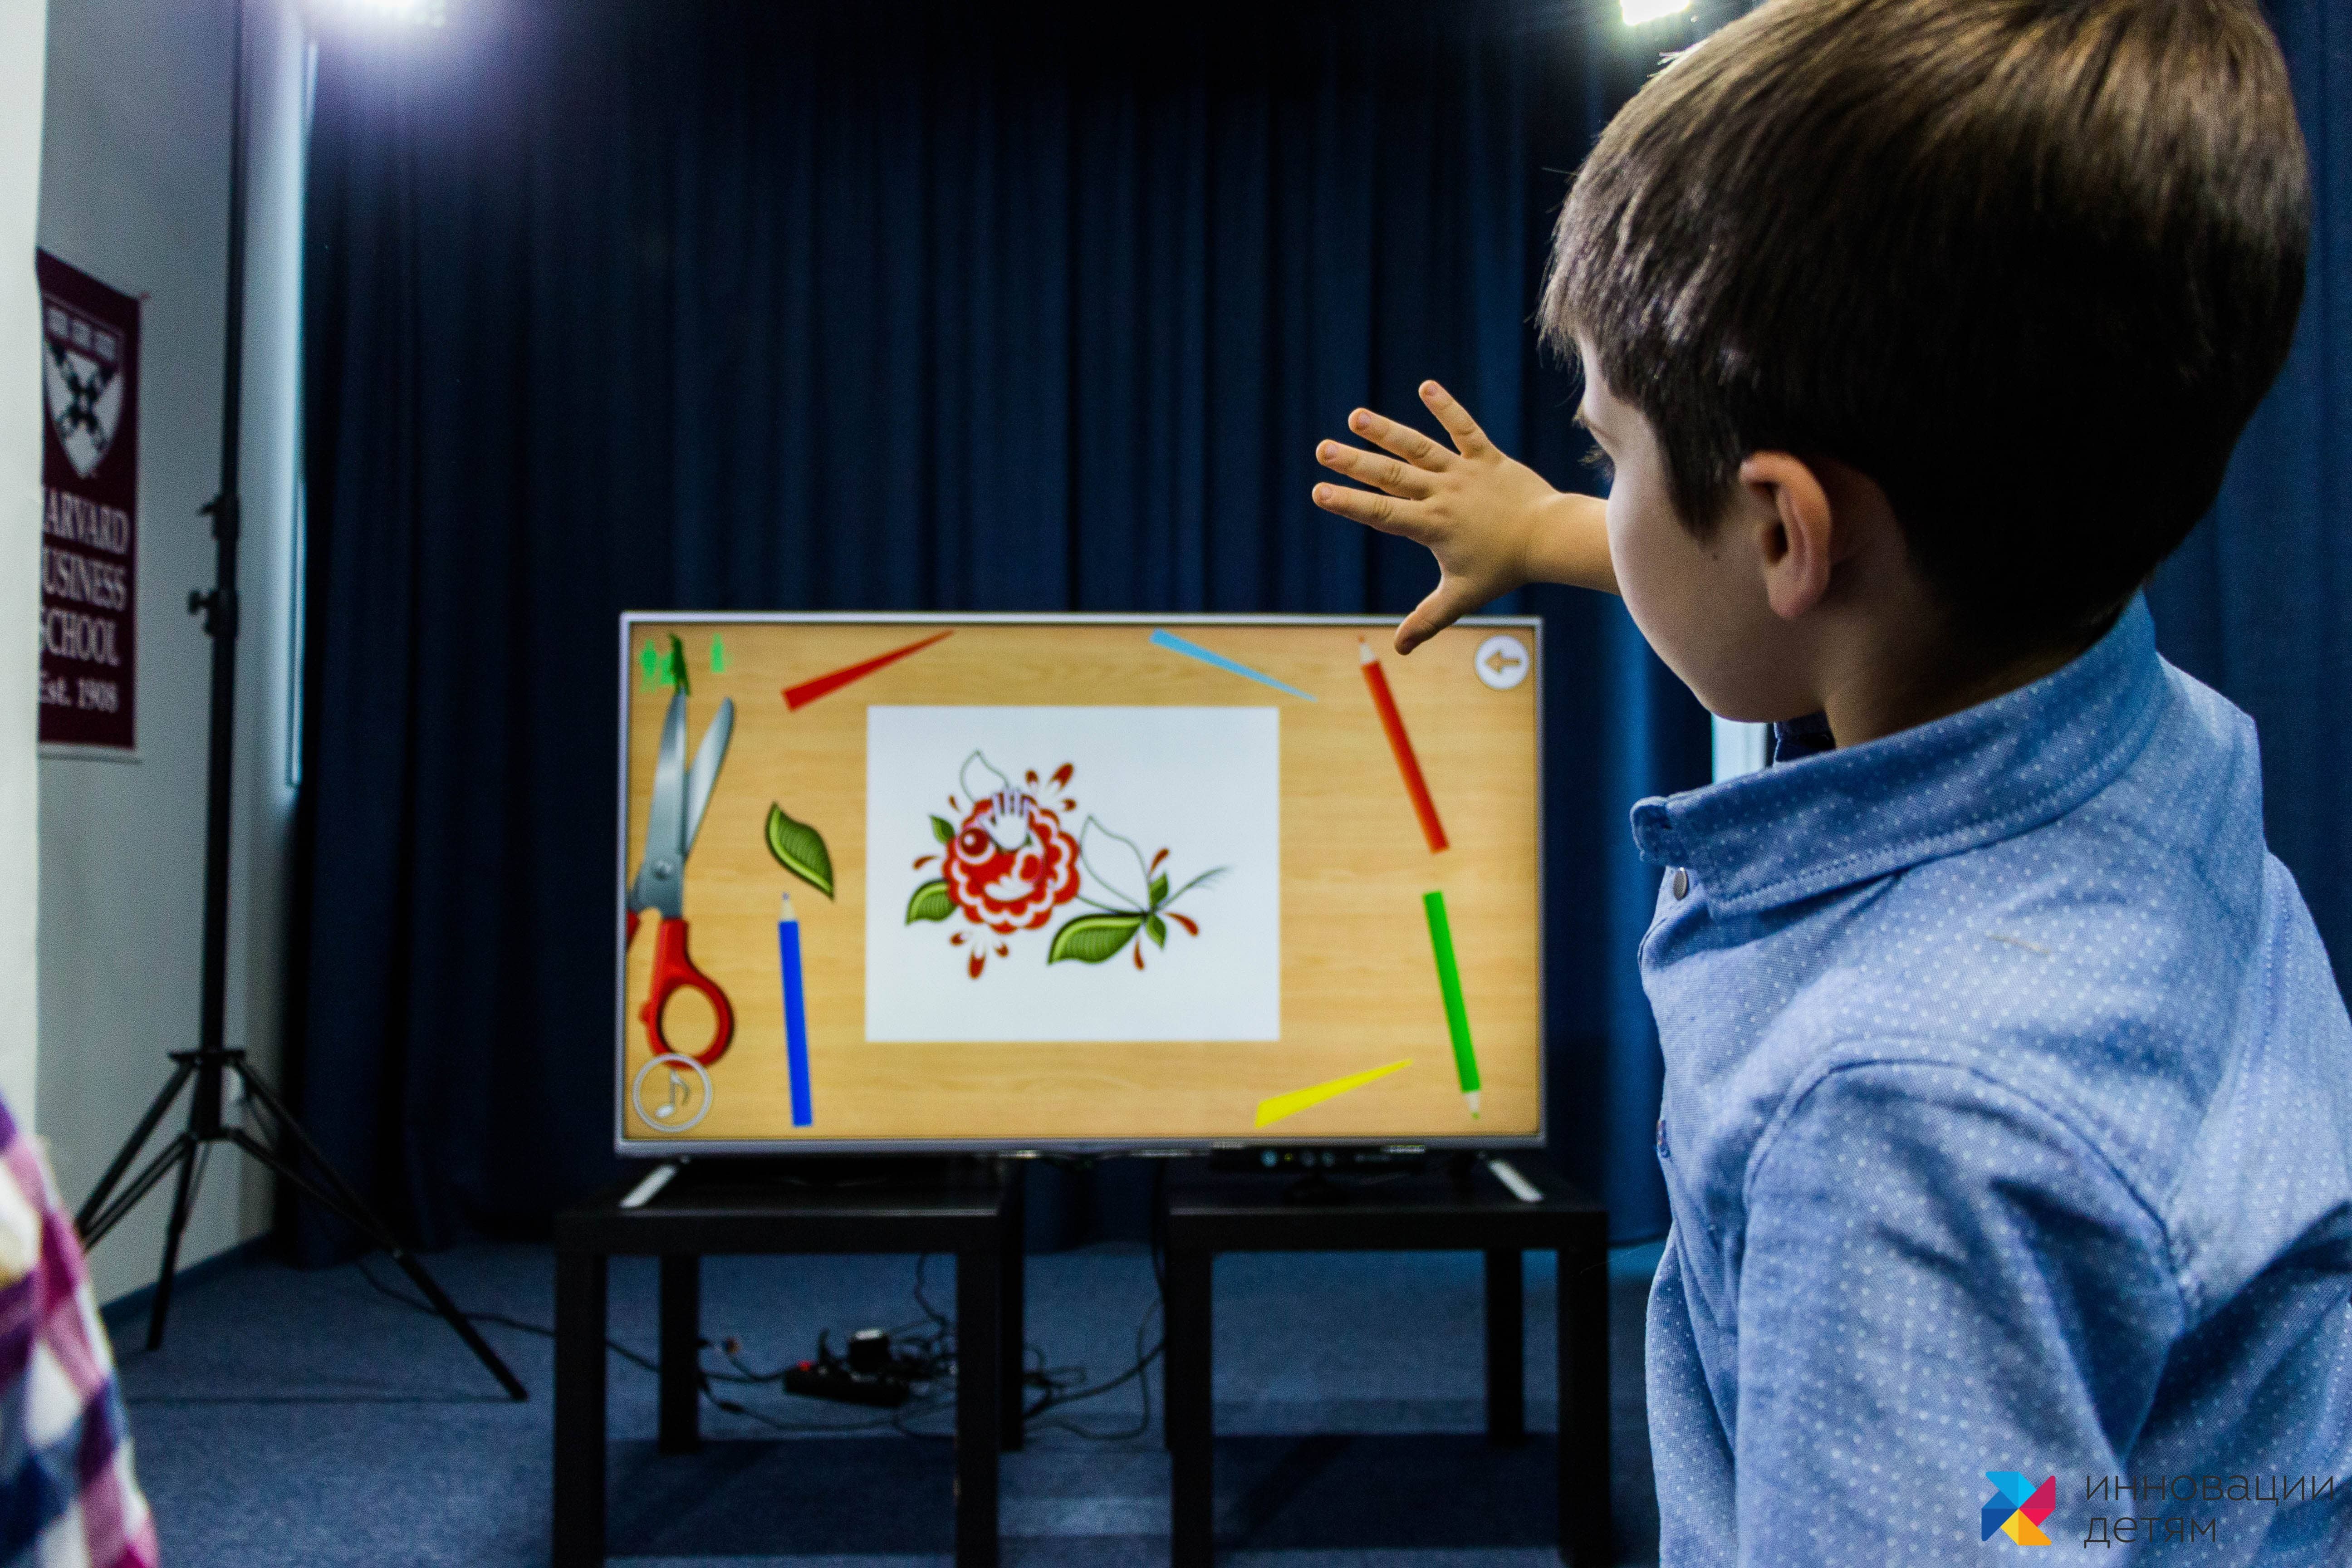 Интерактивная игра 23 8. Комплекс «играй и развивайся» Kinect. Интерактивные игры. Интерактивити для детей. Интерактивное оборудование для детей.